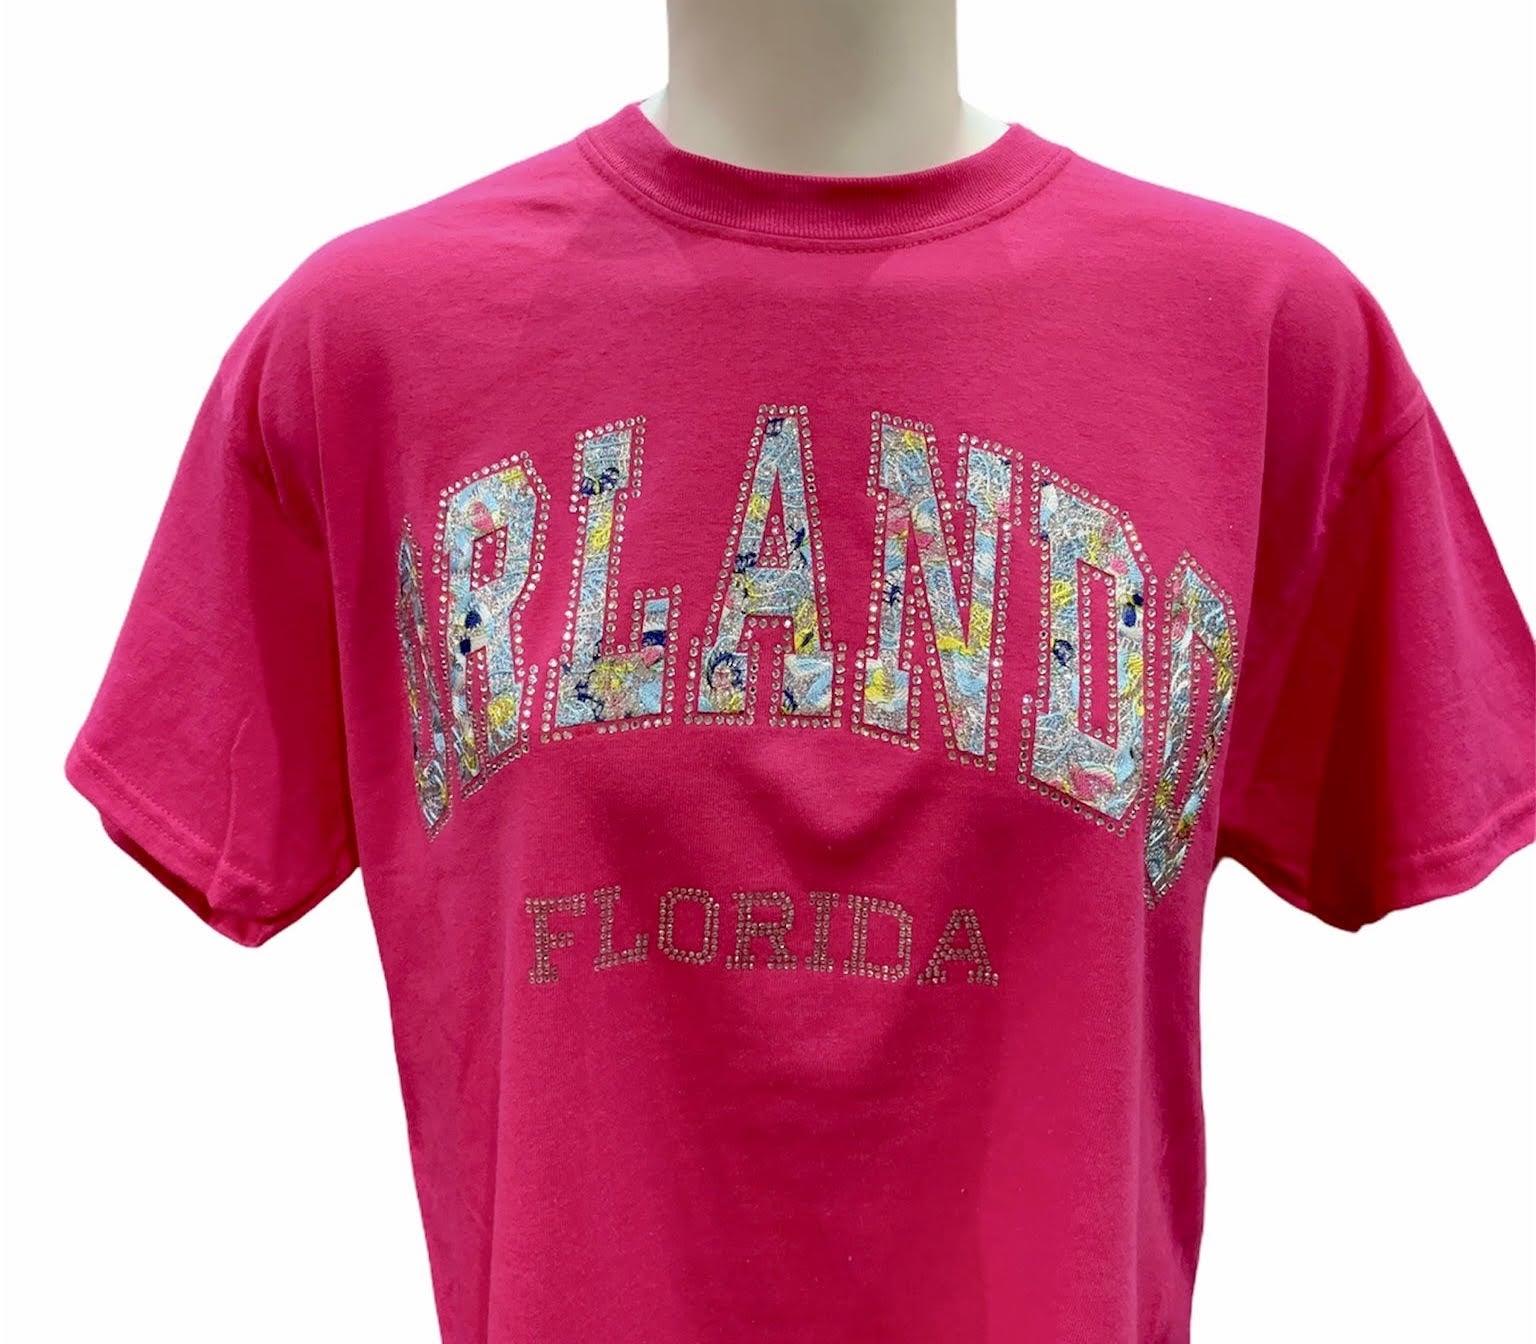 Heliconia Orlando T-shirt With Stone kk619